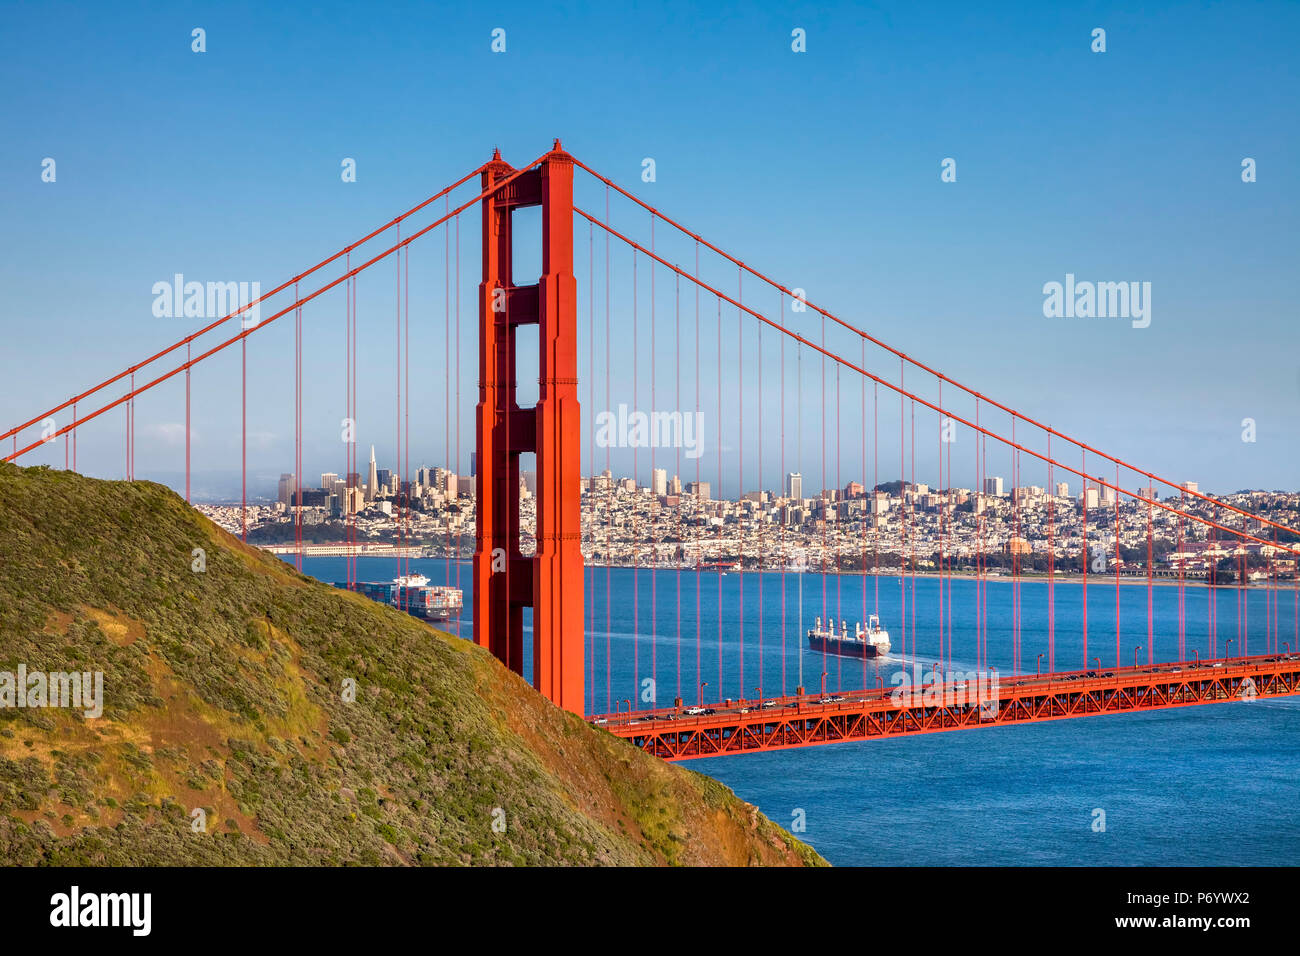 Golden Gate bridge, San Francisco, California, USA Stock Photo